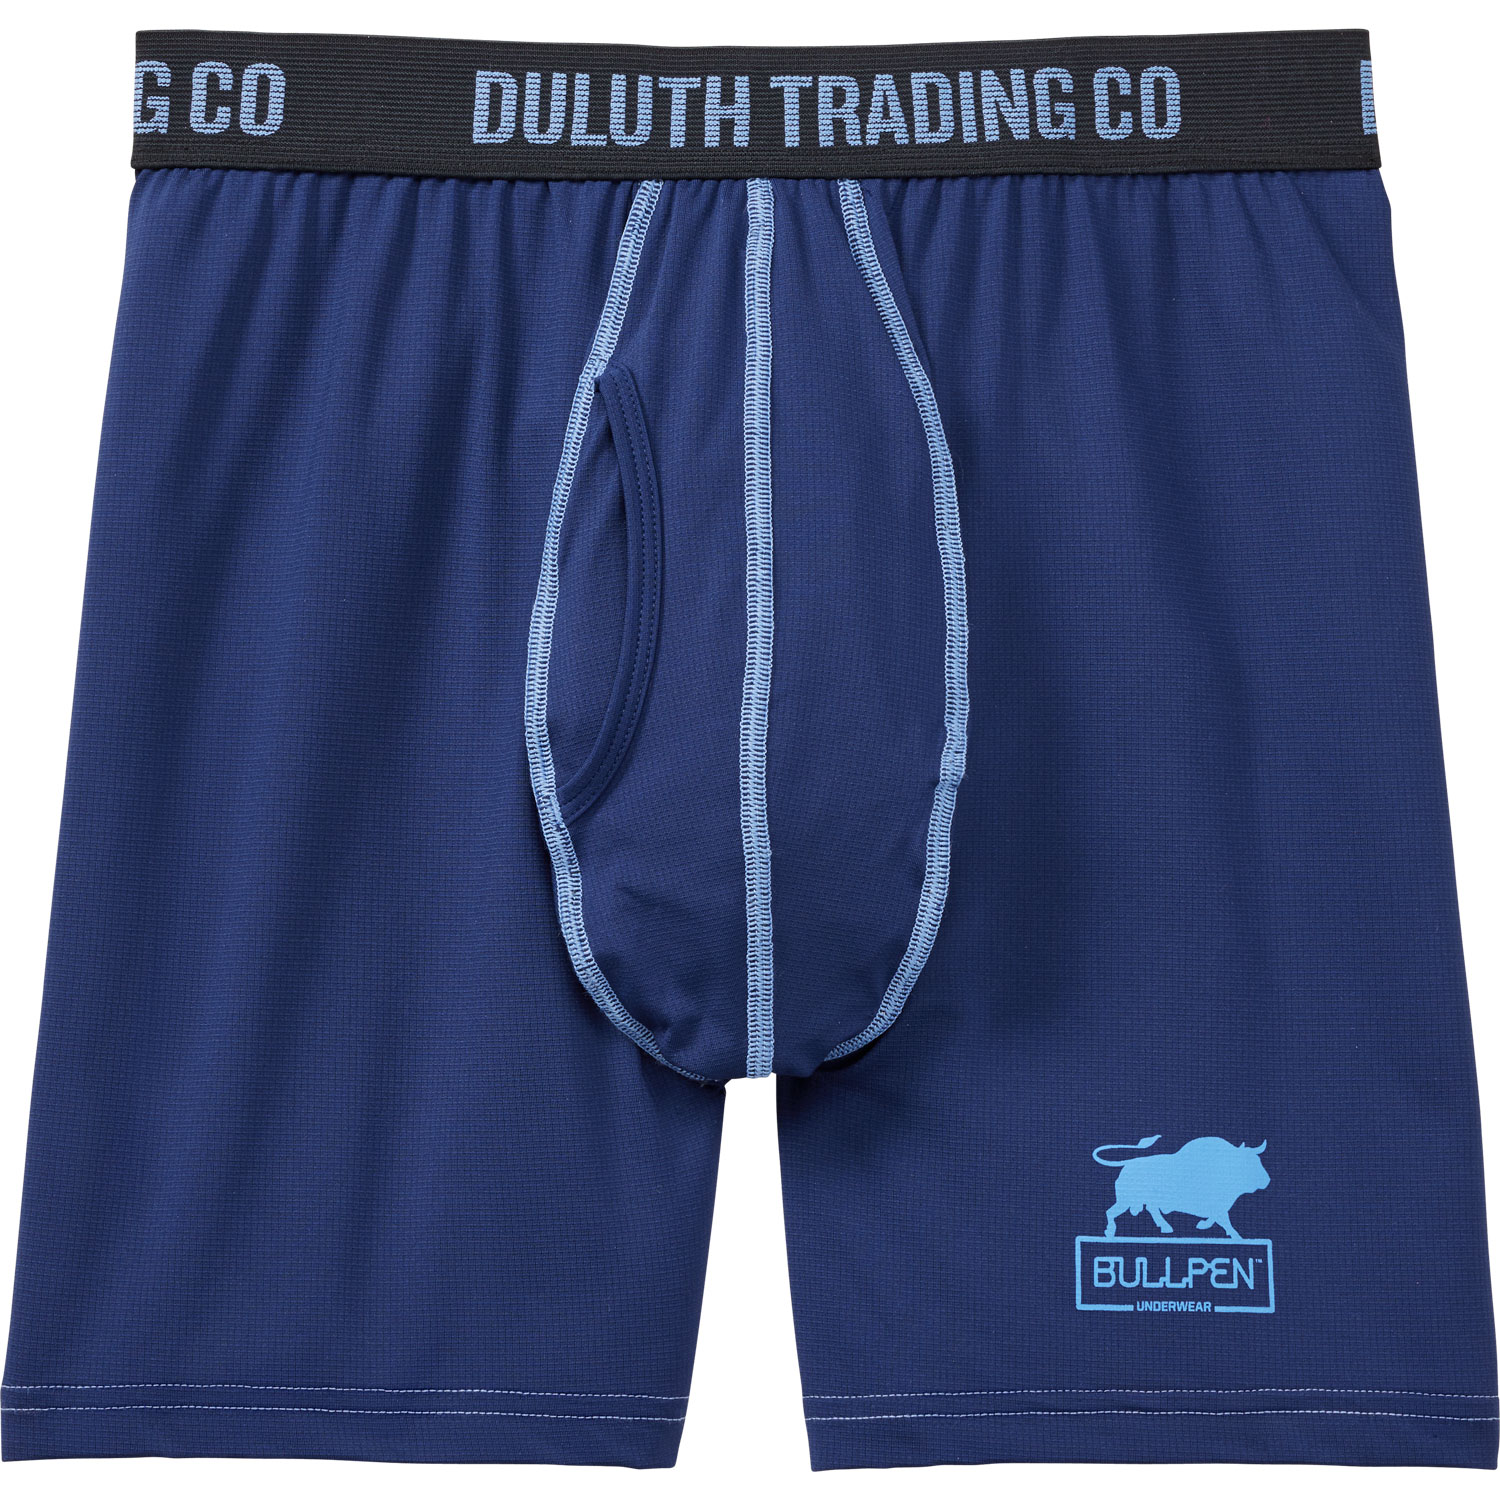 Duluth Trading Co. Bullpen Underwear Tetherball :15 on Vimeo